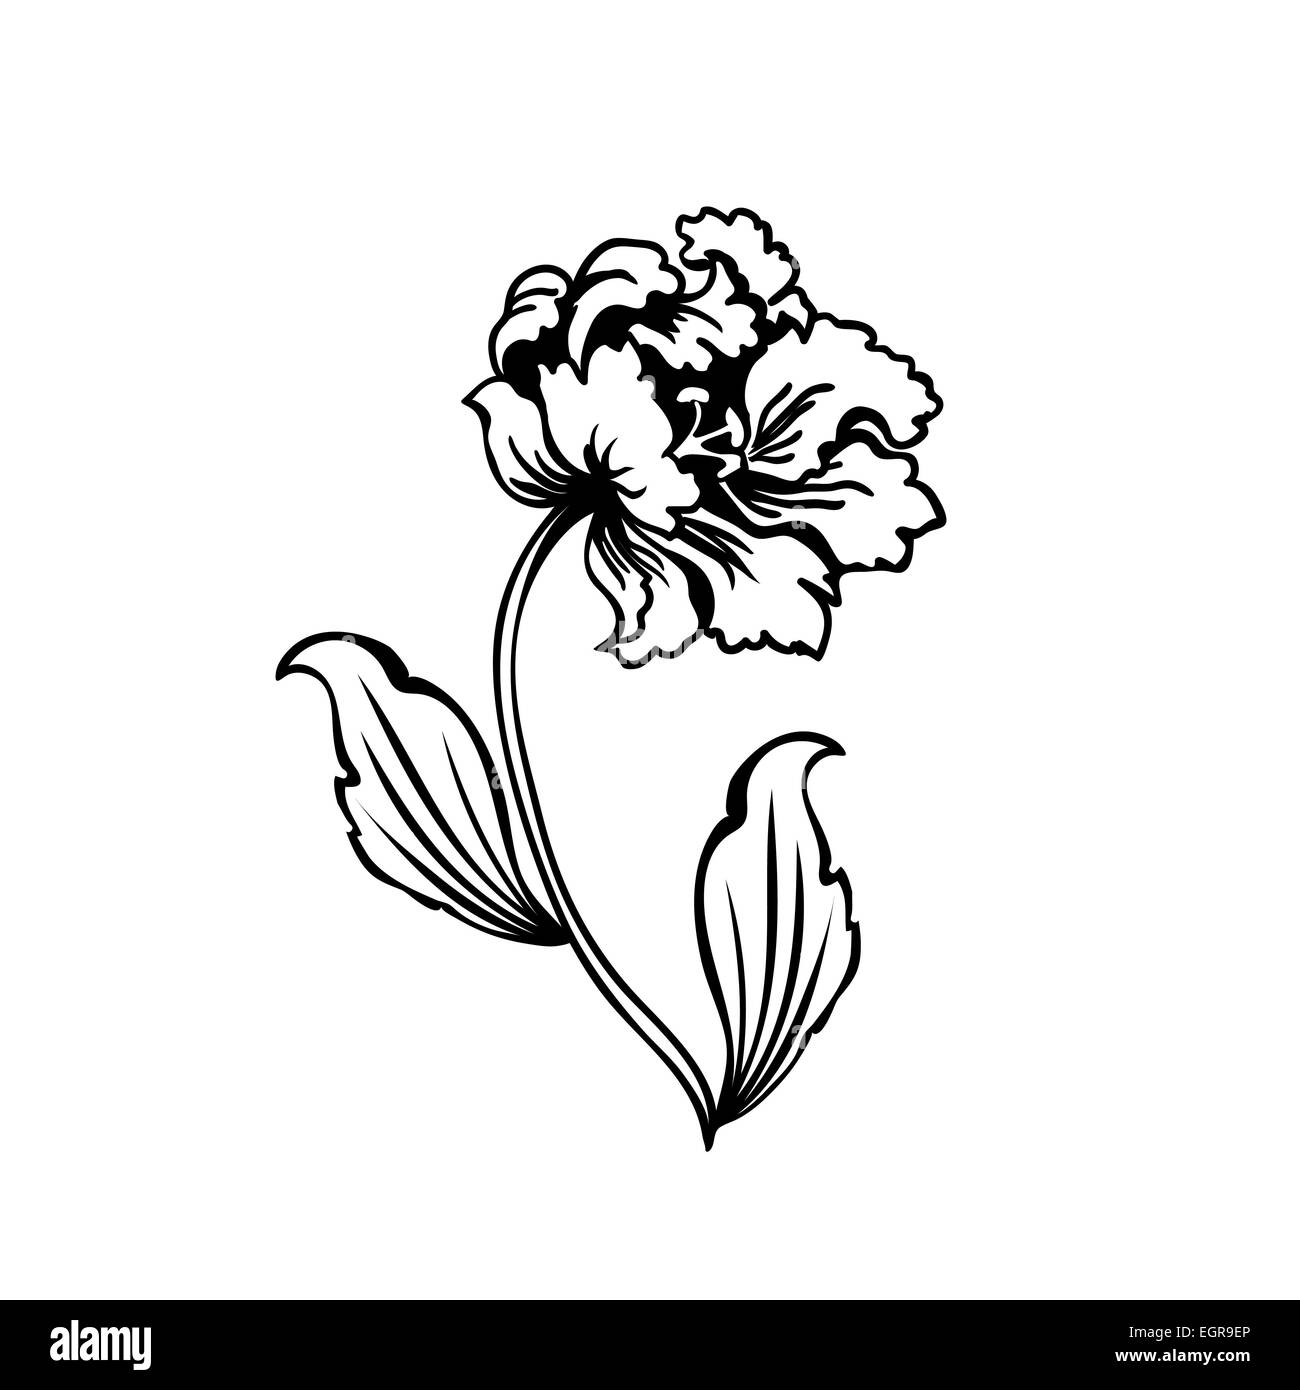 Fleur tulipe. Contour noir sur fond blanc, vector illustration Banque D'Images